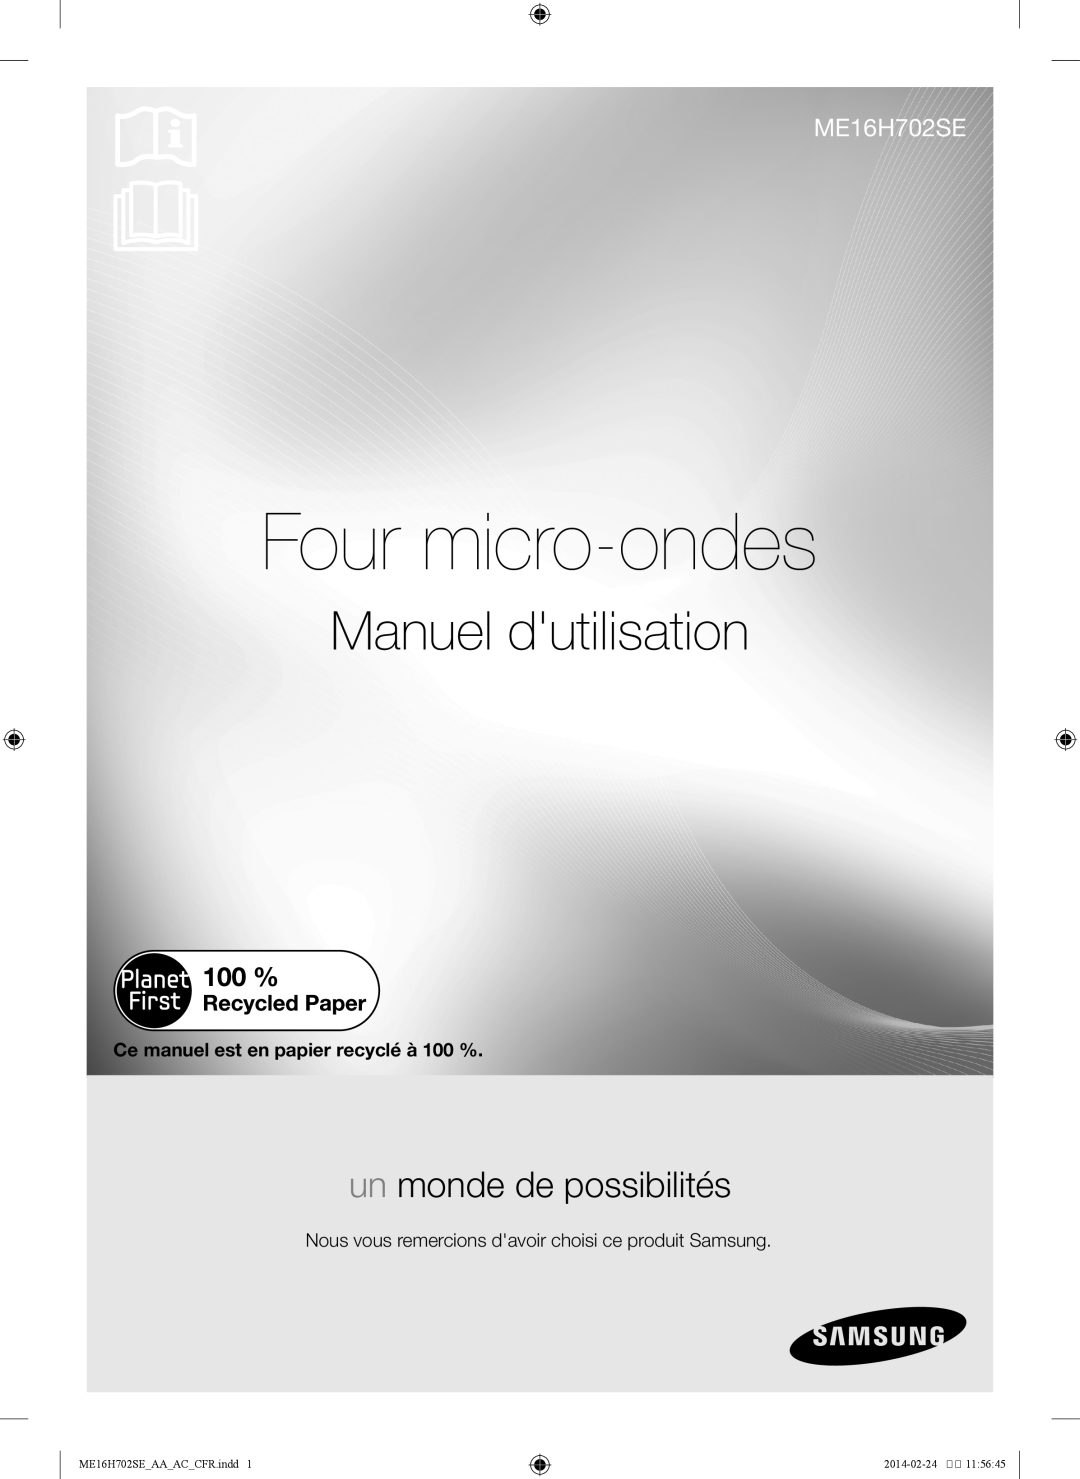 Samsung Four micro-ondes, Manuel dutilisation, un monde de possibilités, ME16H702SE AA AC CFR.indd, 2014-02-2411 